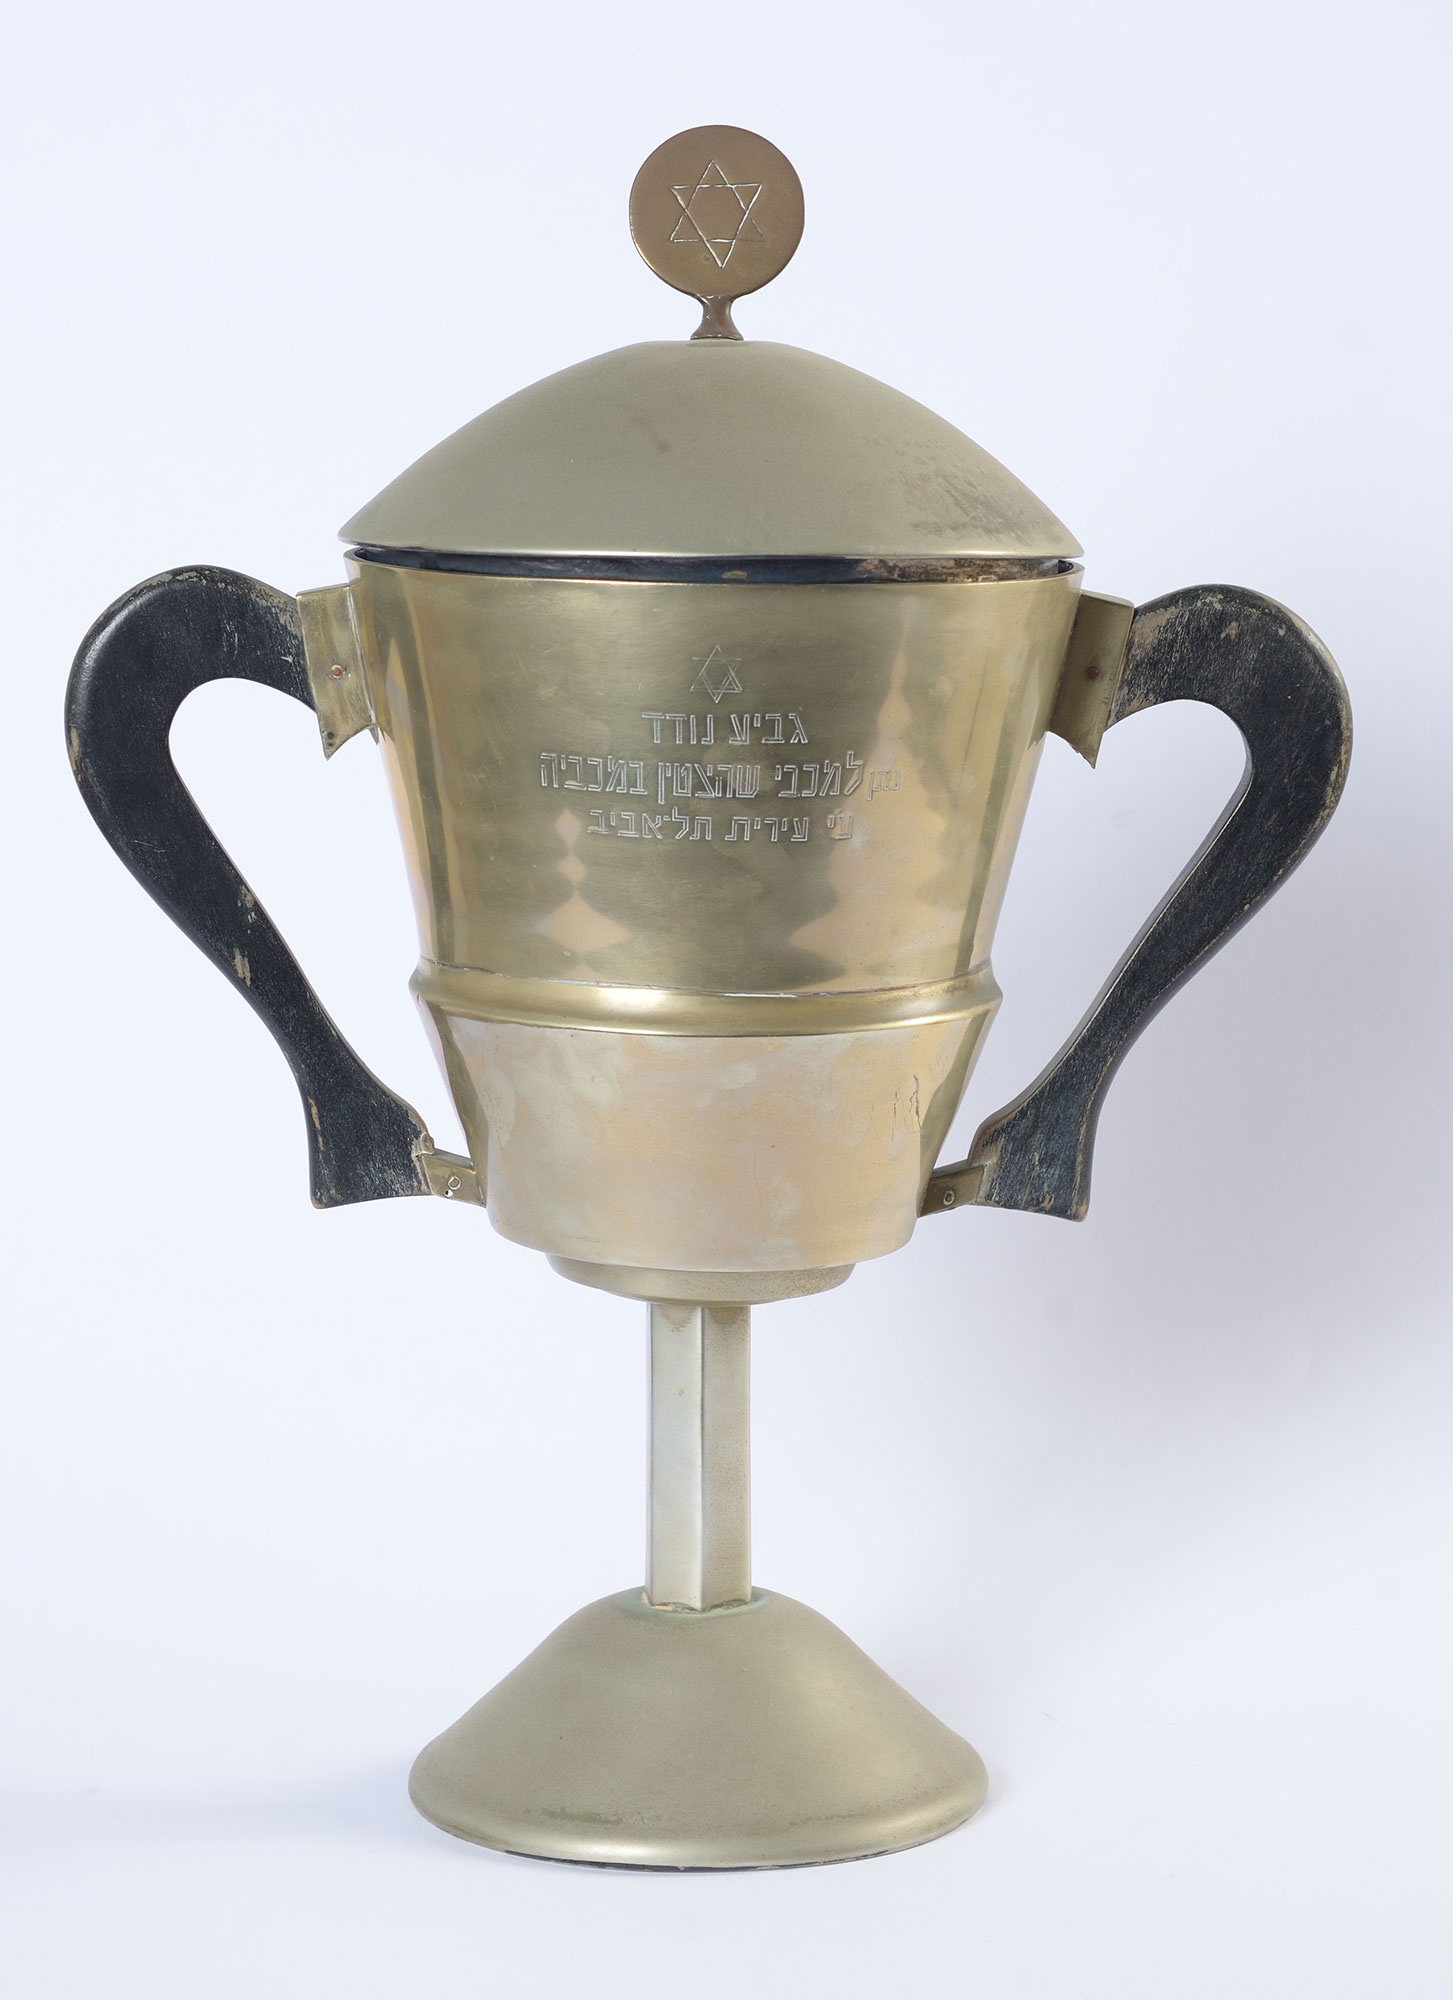 Copa al deportista destacado de la Macabeada, obsequio de la Municipalidad de Tel Aviv, entregada en 1935 a la atleta Maryla Freiwald